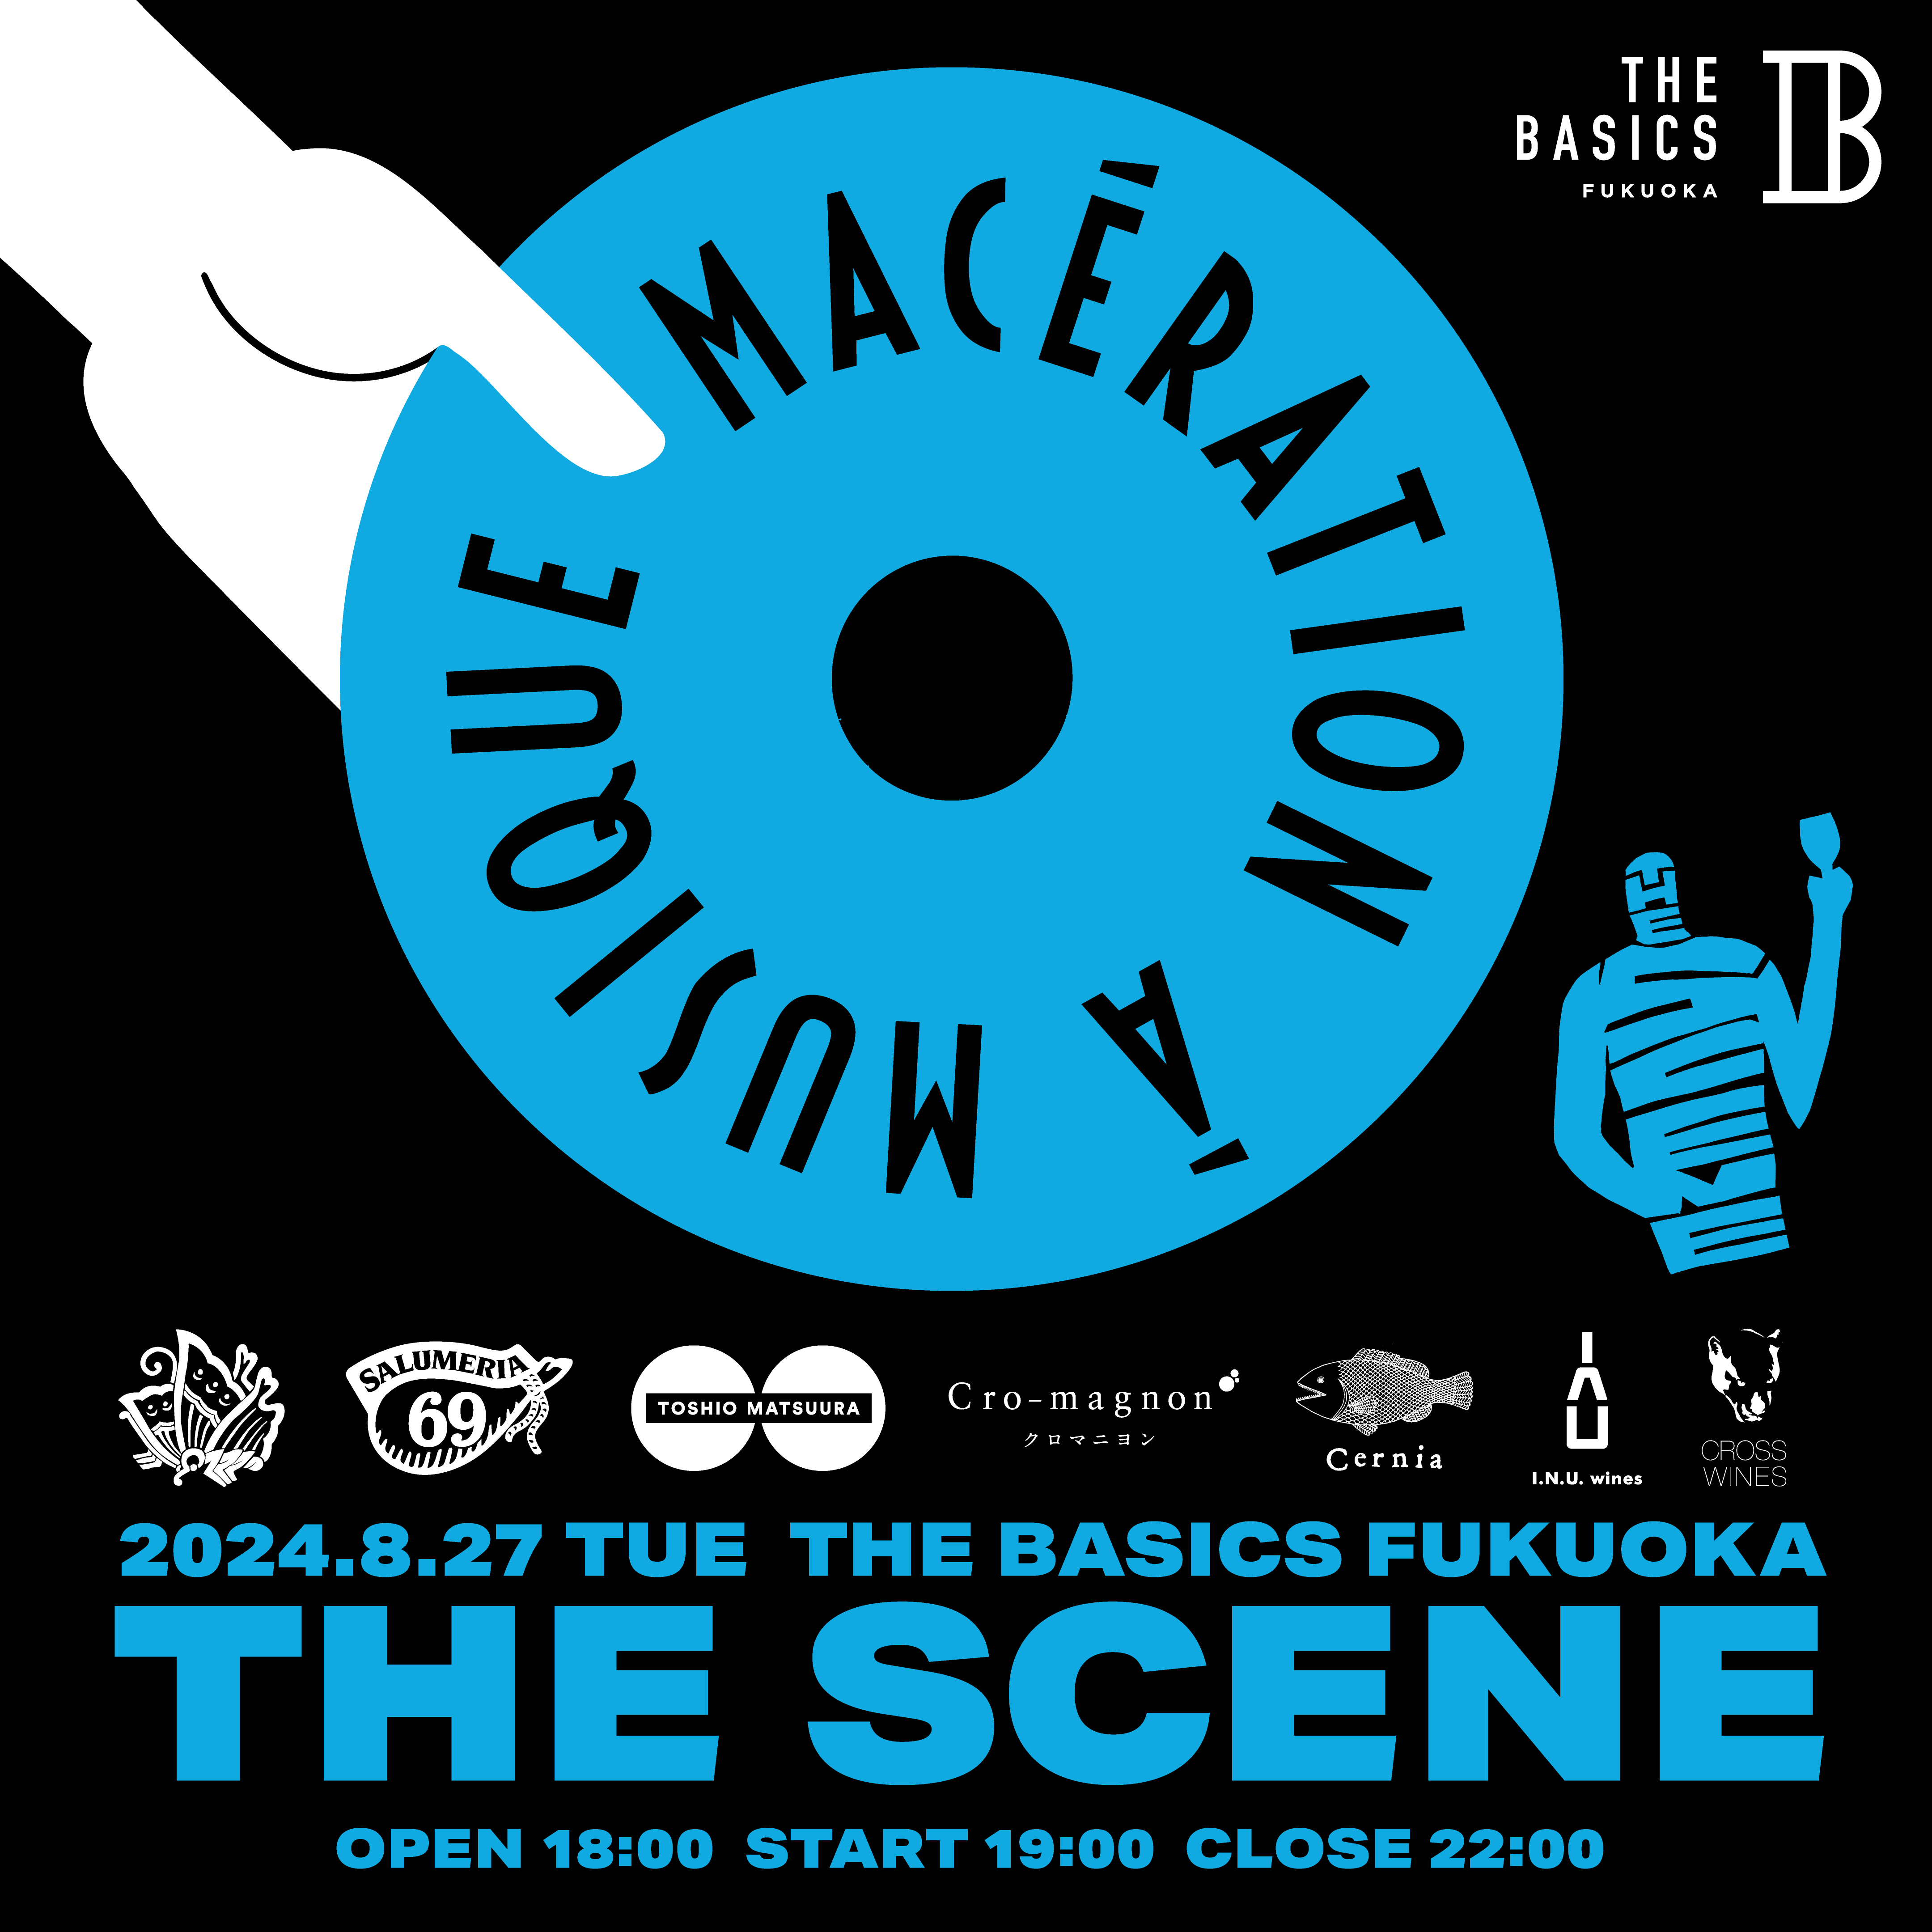 ワインと食と音楽を楽しむイベント
“Maceration a Musique”が帰ってくる！
ホテル『THE BASICS FUKUOKA』にて8月27日(火)開催決定